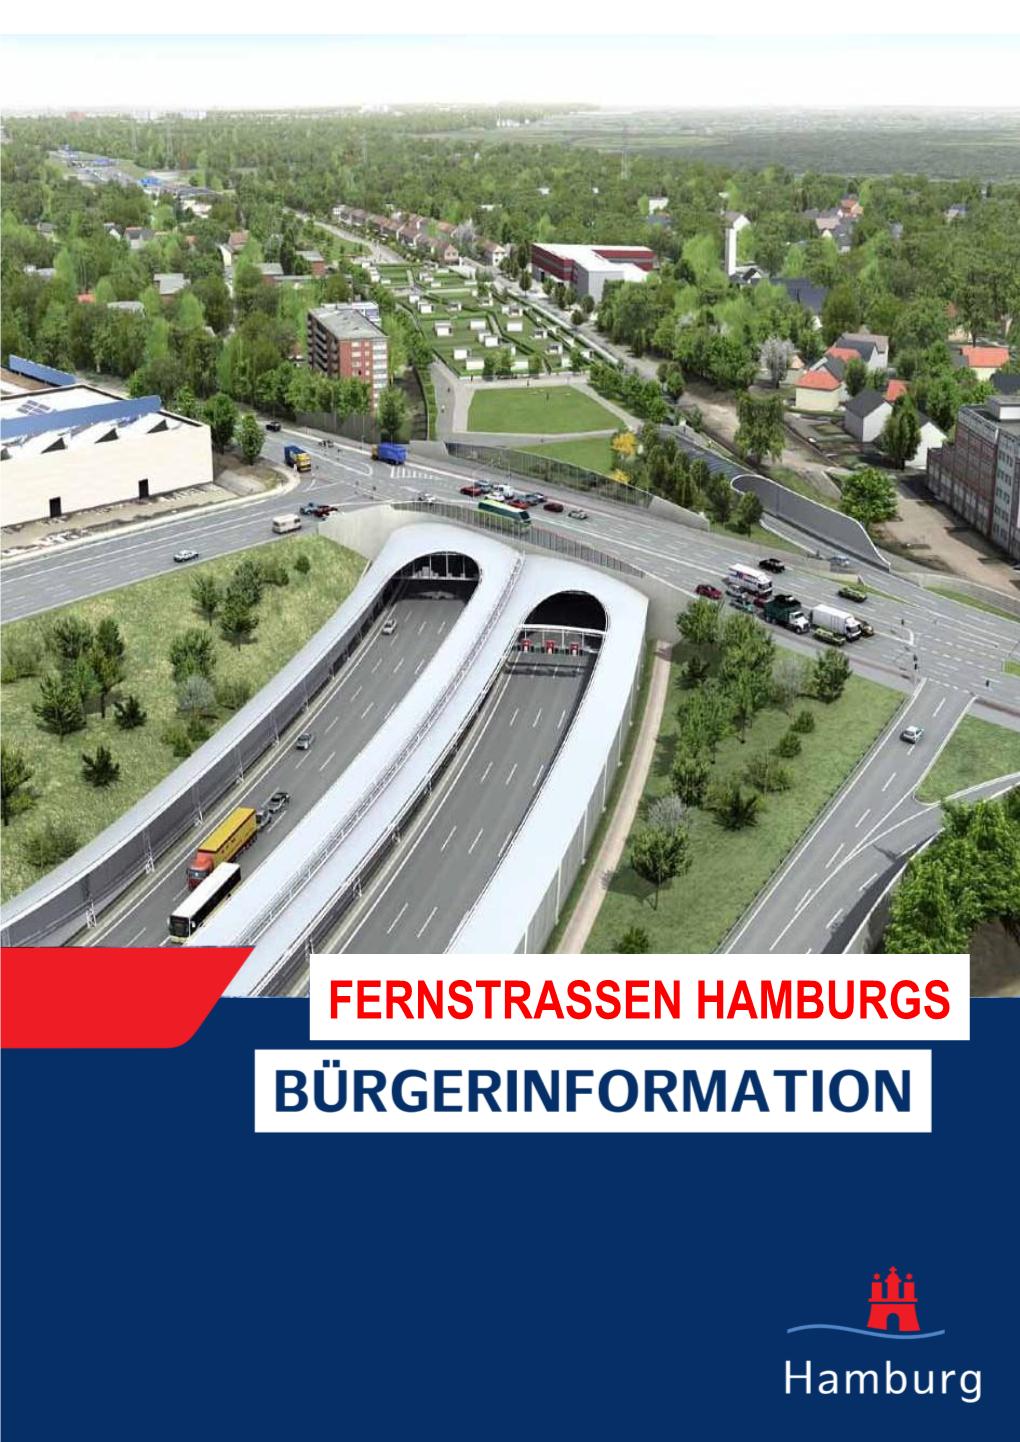 Fernstrassen Hamburgs